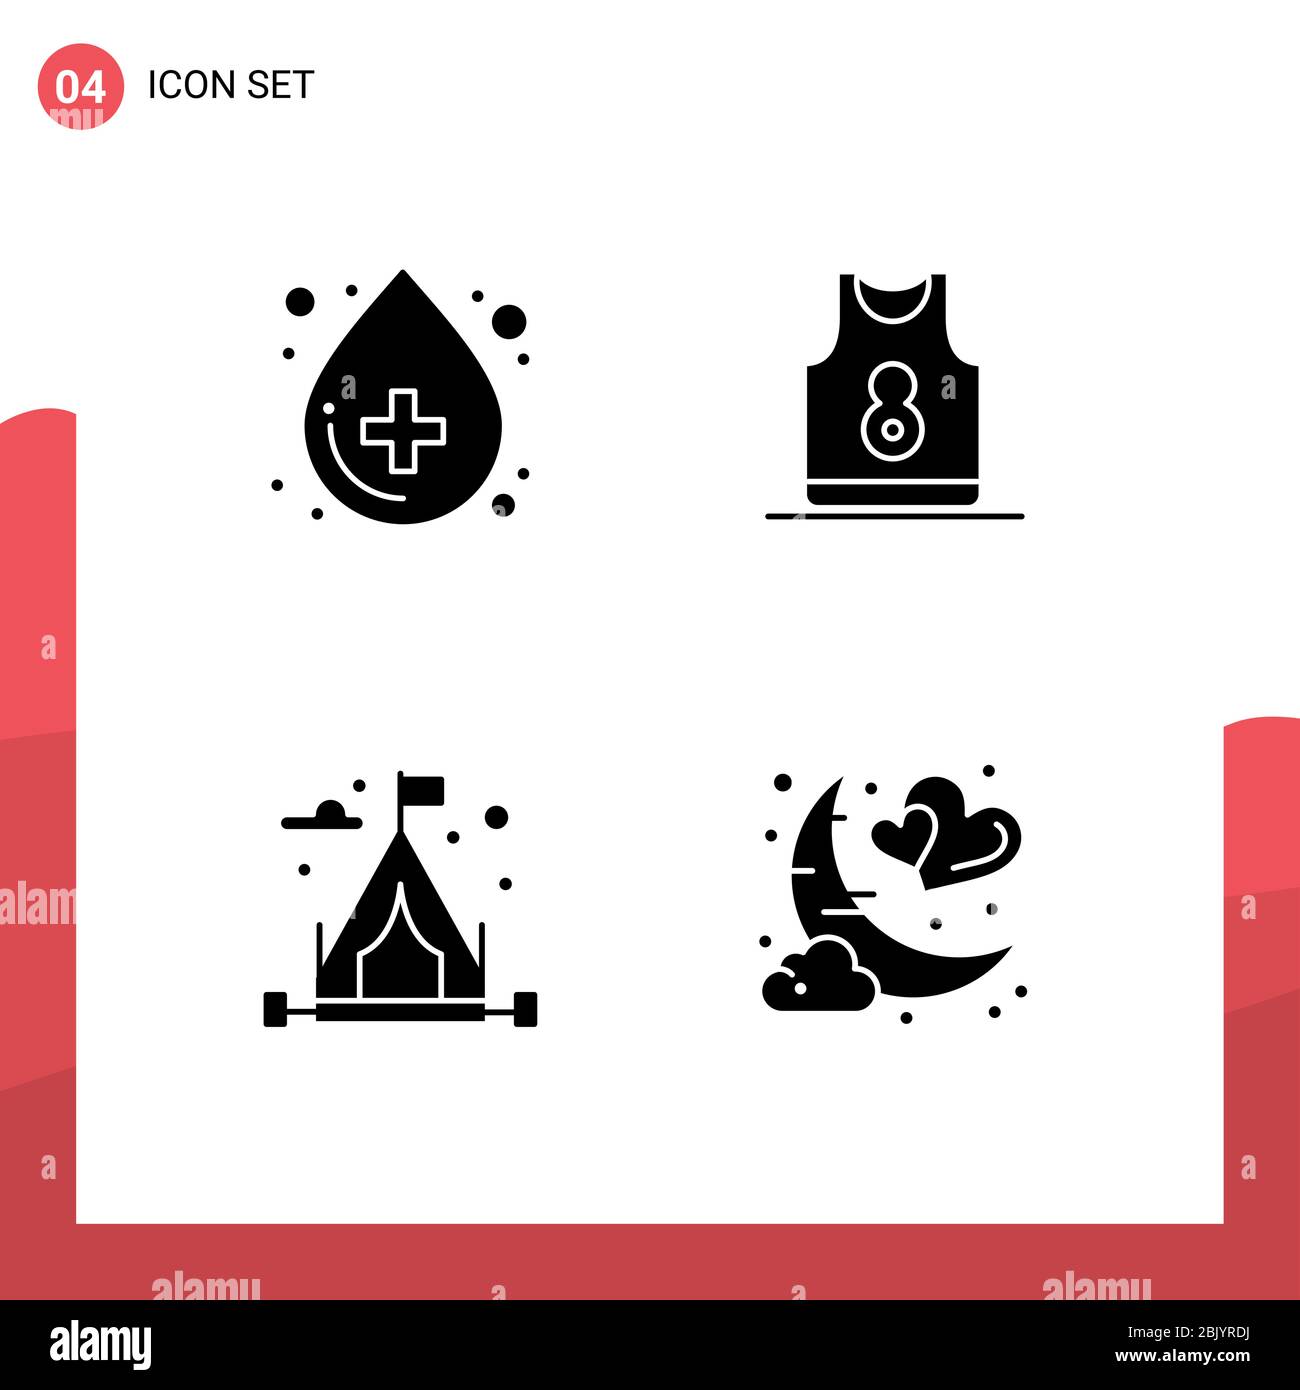 Set di 4 icone moderne UI simboli segni per sangue, campeggio, medico, sport, hobby Editable Vector Design Elements Illustrazione Vettoriale